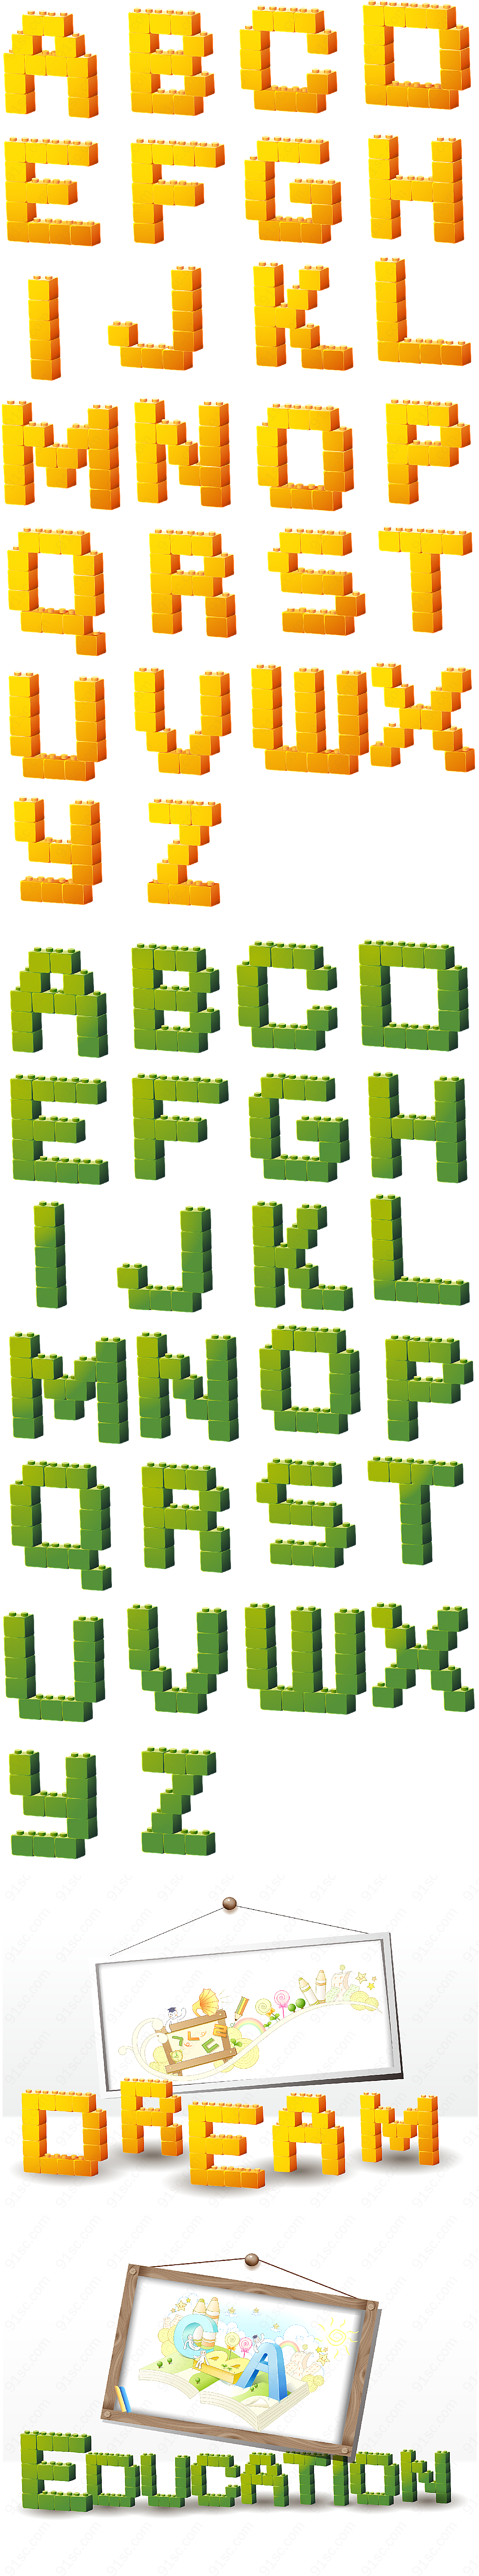 立体积木型字母矢量艺术字